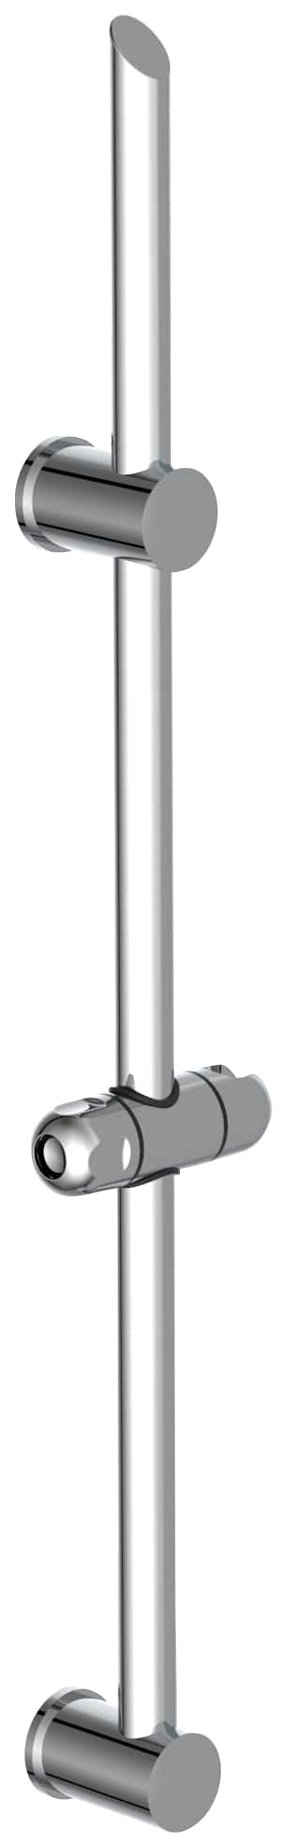 Schütte Duschstange »SIGNO«, 70cm, Duschstange mit höhenverstellbarer Wandhalterung, Chrom